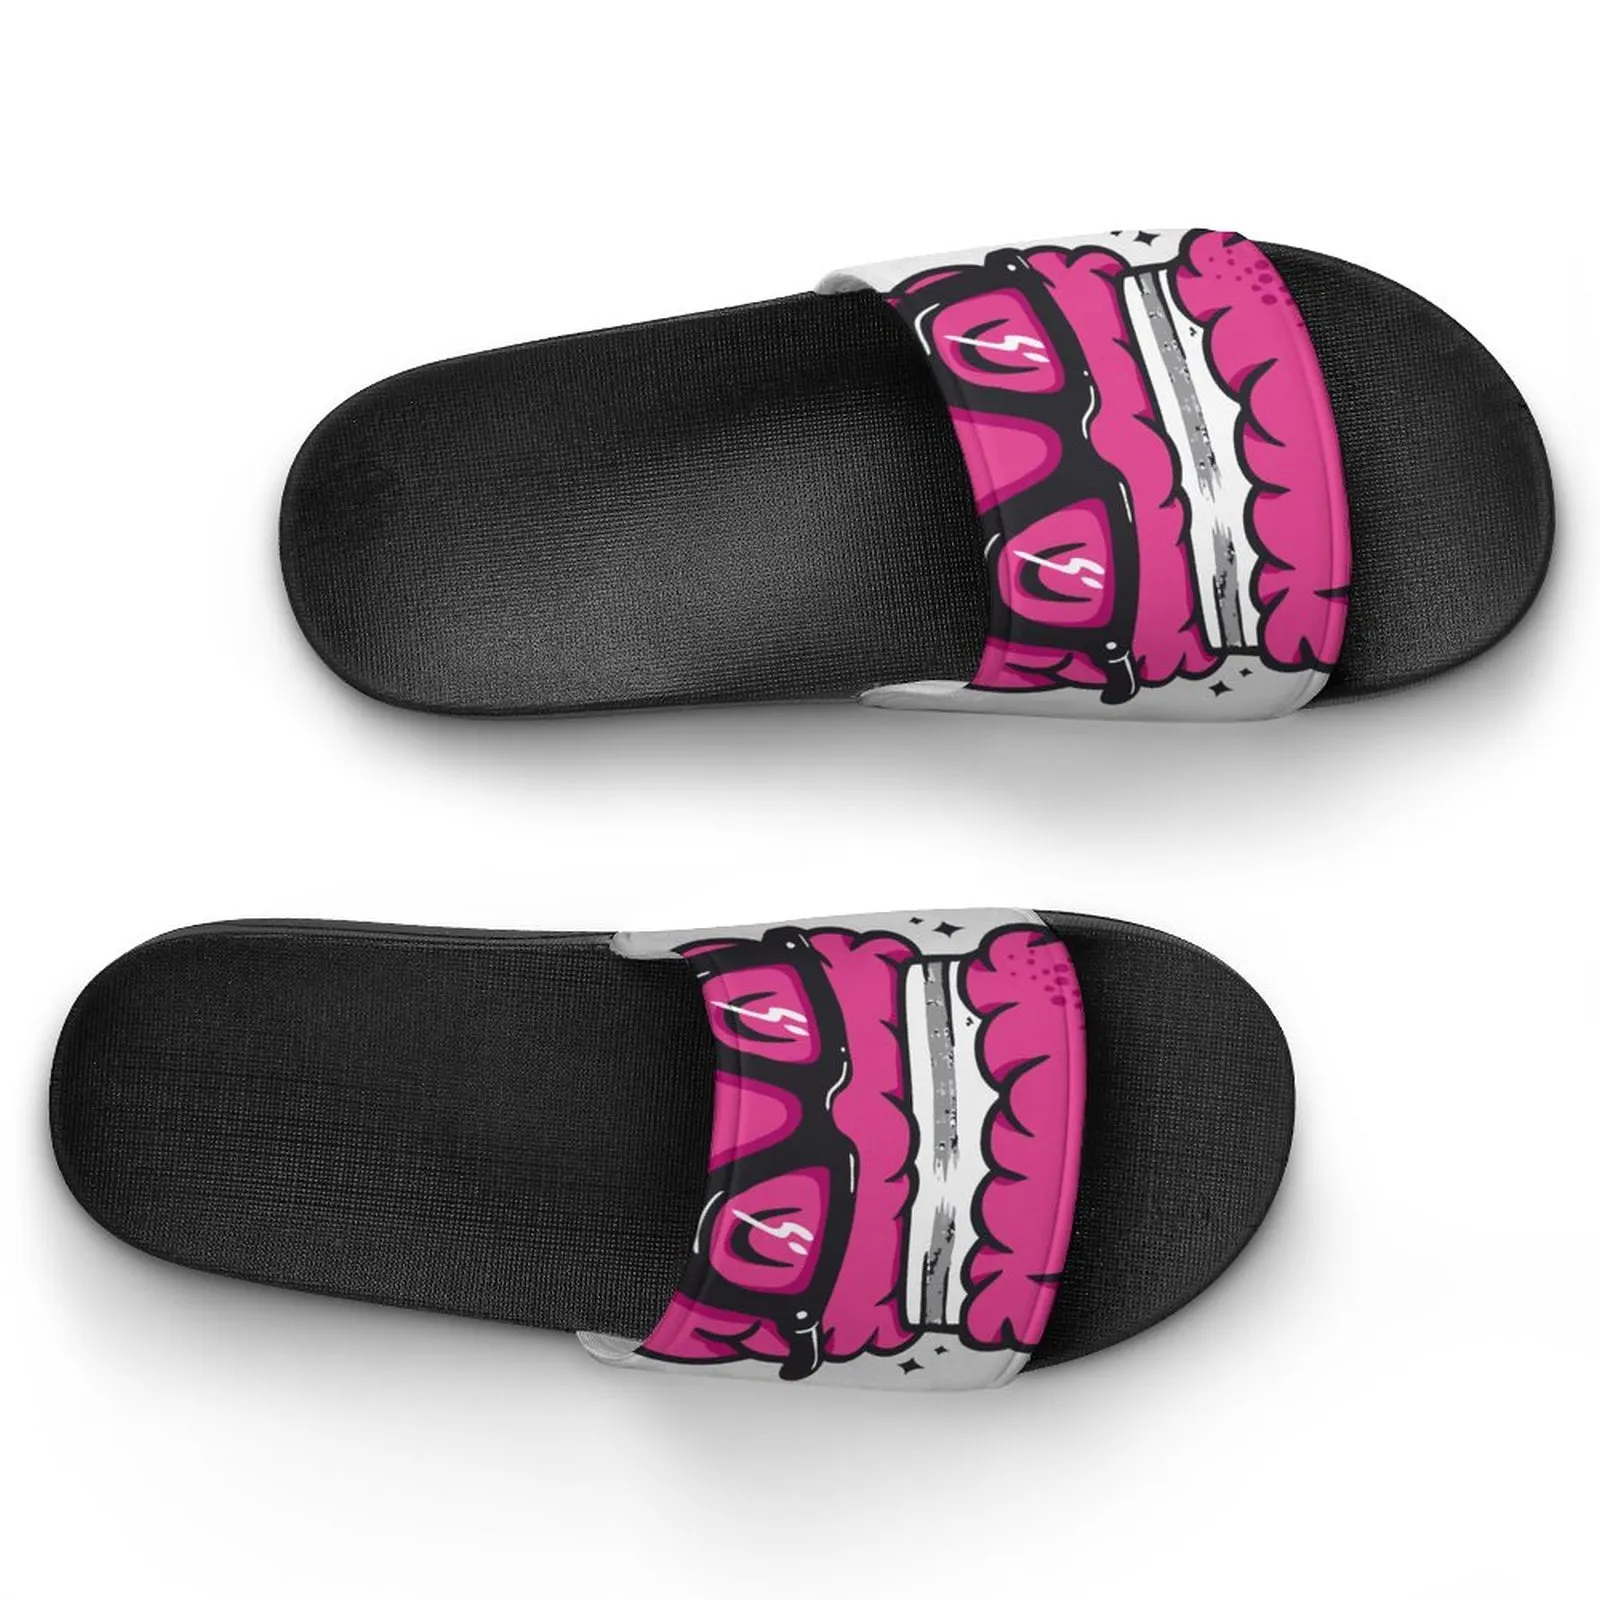 Chaussures personnalisées bricolage fournir des images pour accepter la personnalisation pantoufles sandales glisser ewhisdj hommes femmes sport taille 36-45